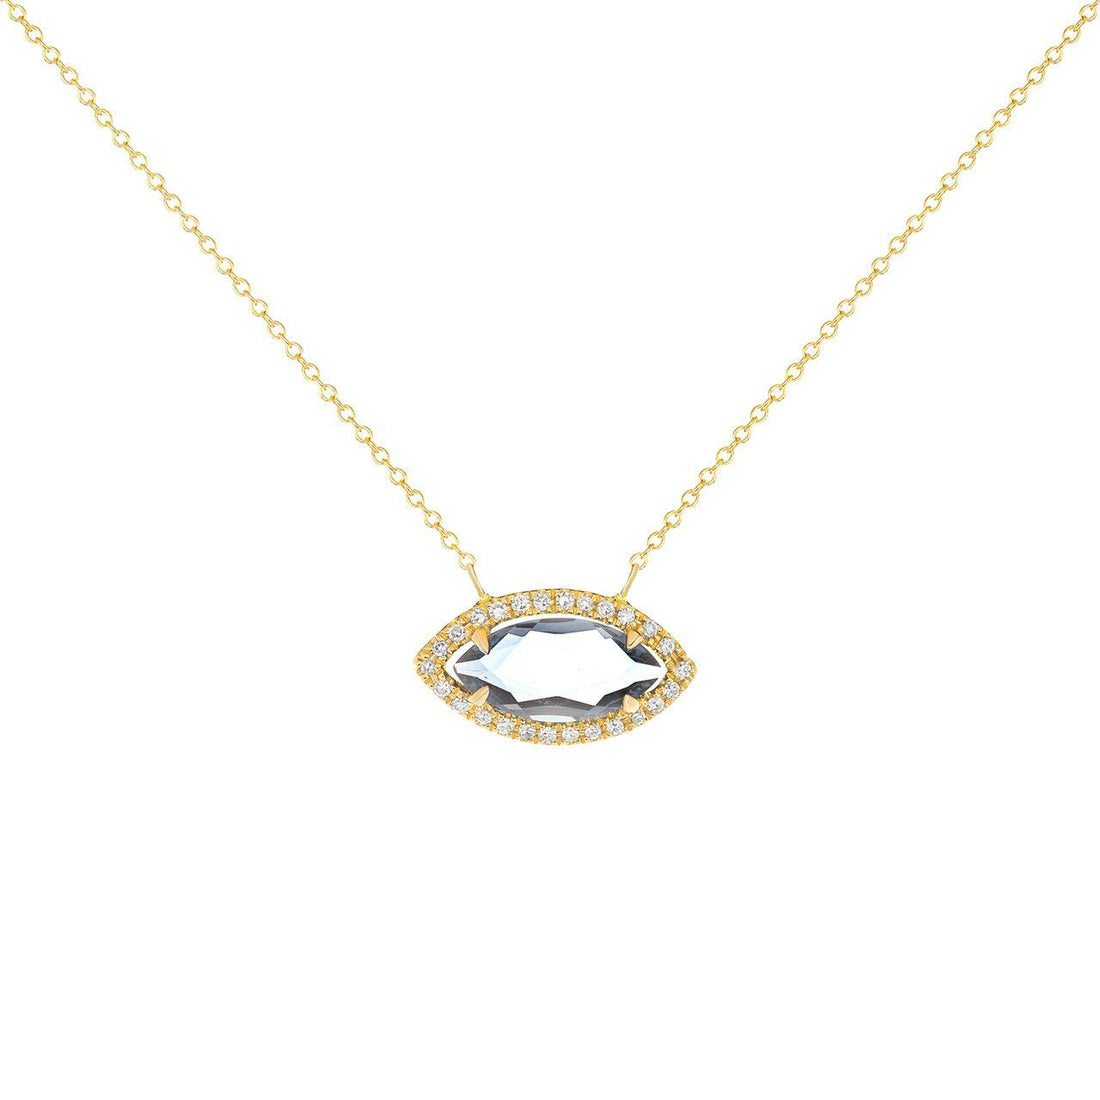 Eyelight Necklace - Ele Keats Jewelry